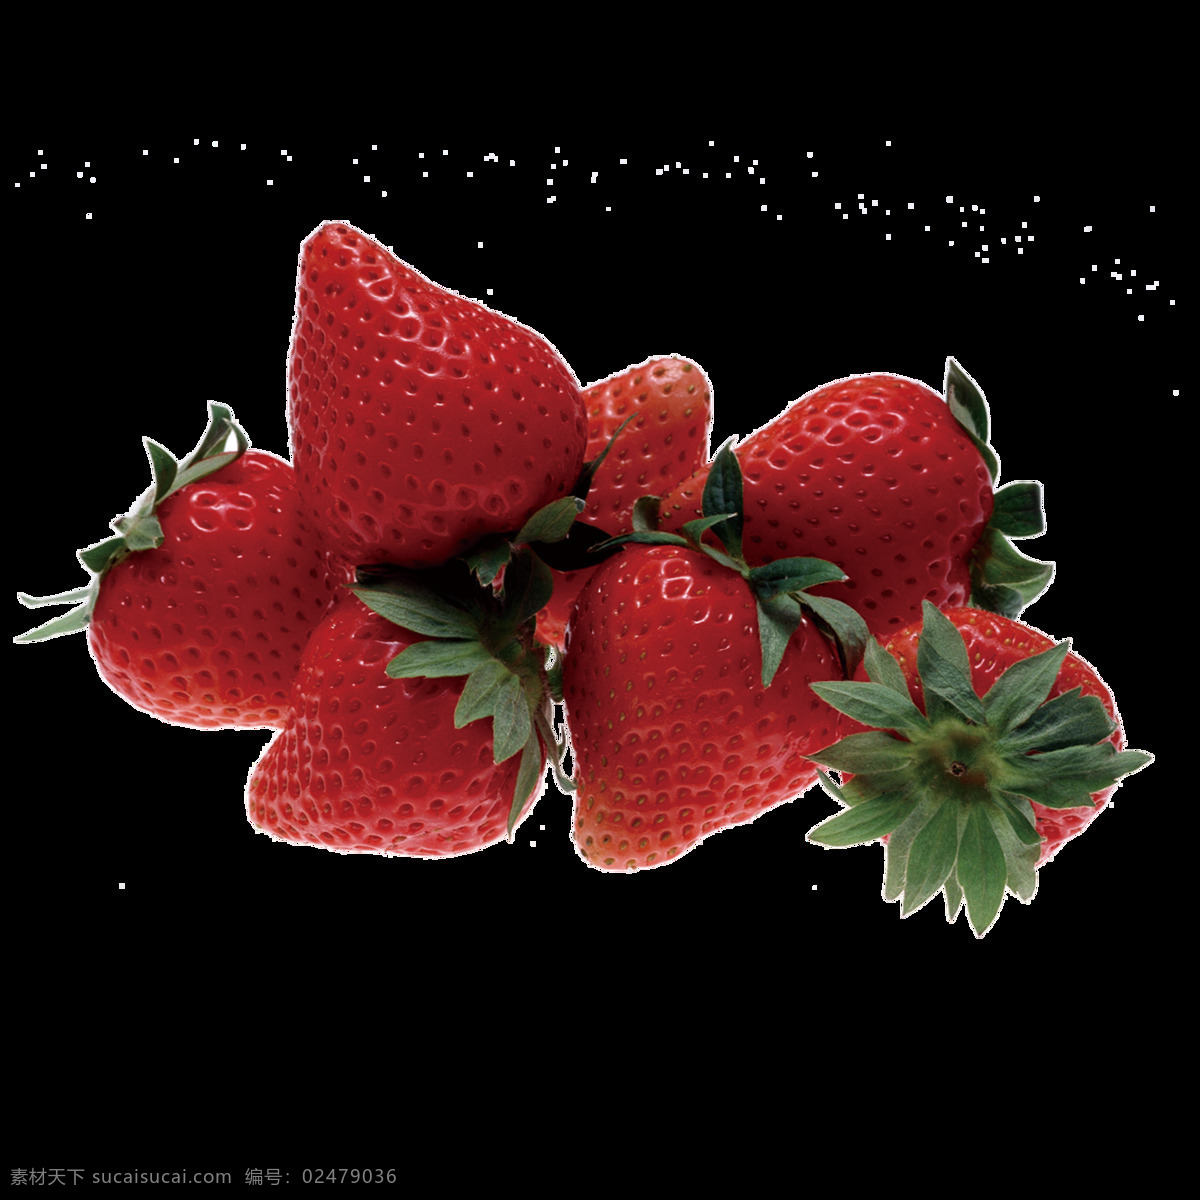 高清 草莓 唯美 水果